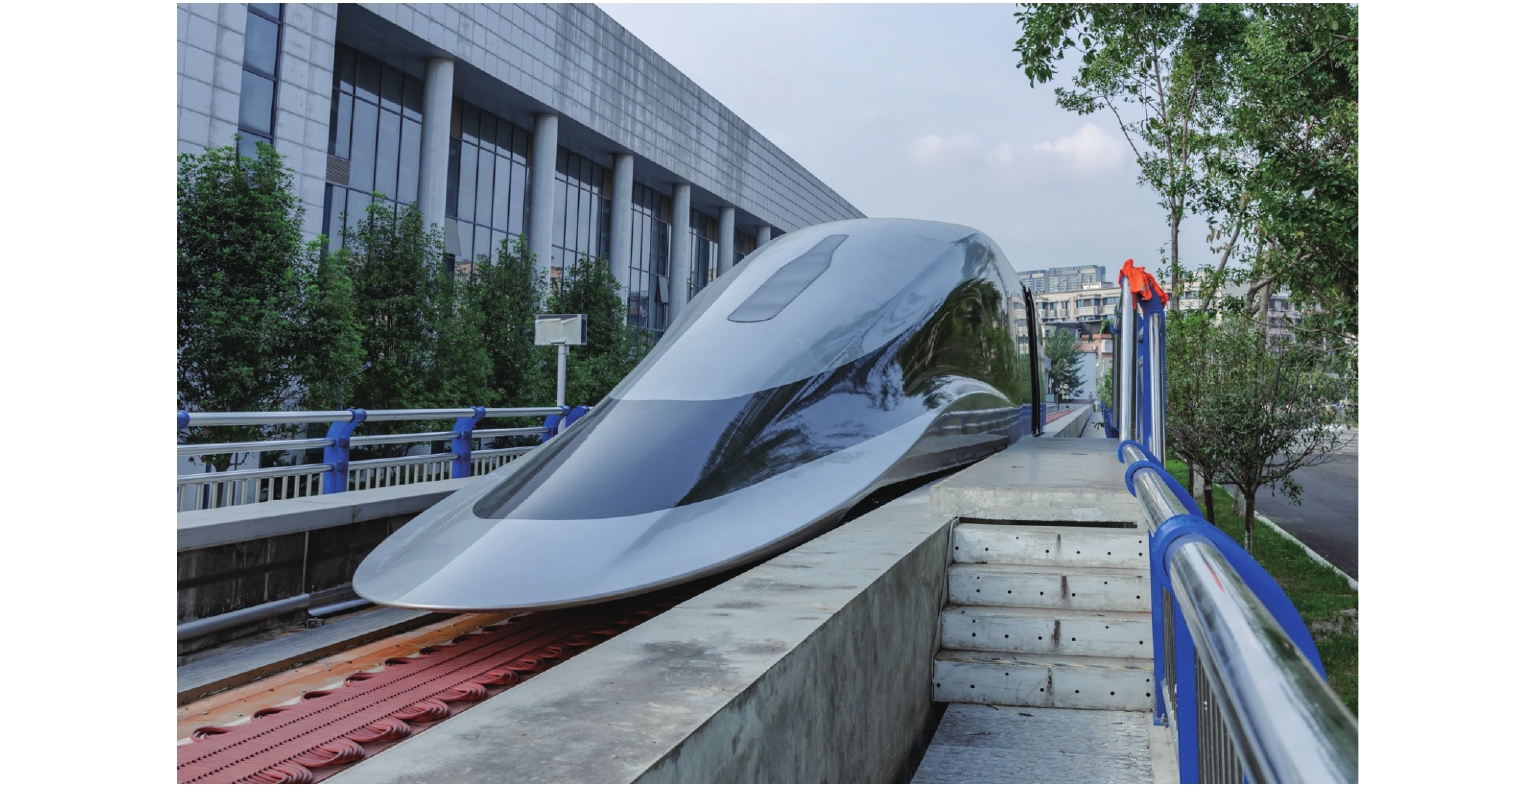 "飞跃号"磁悬浮列车概念设计入选第十三届全国美术作品展览并荣获第三届中国美术奖金奖-清华大学美术学院